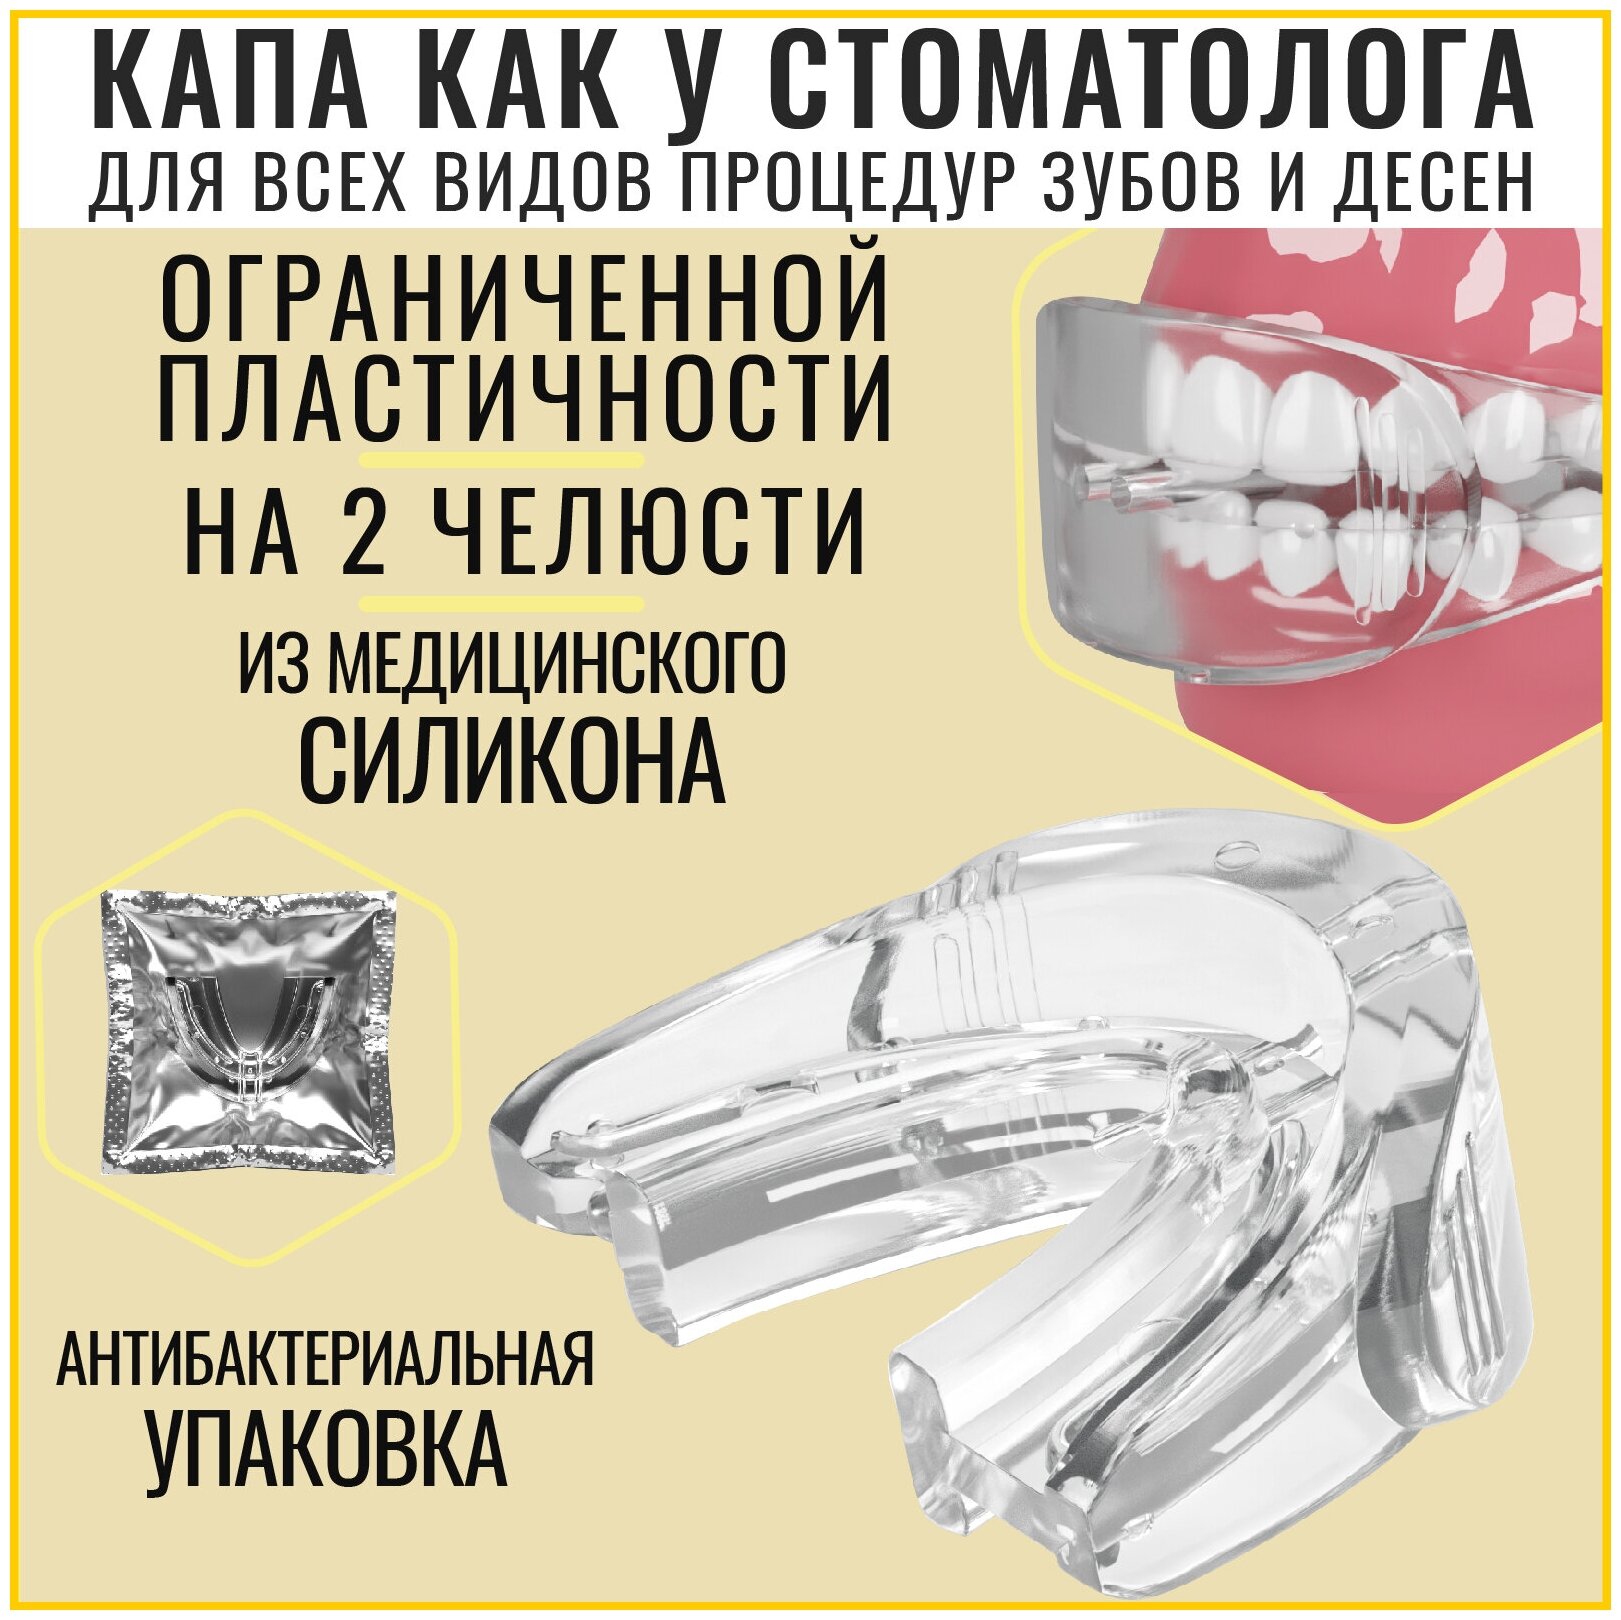 BATAN / Капа стоматологическая для зубов и десен отбеливания / реминерализации зубов силиконовая мягкая